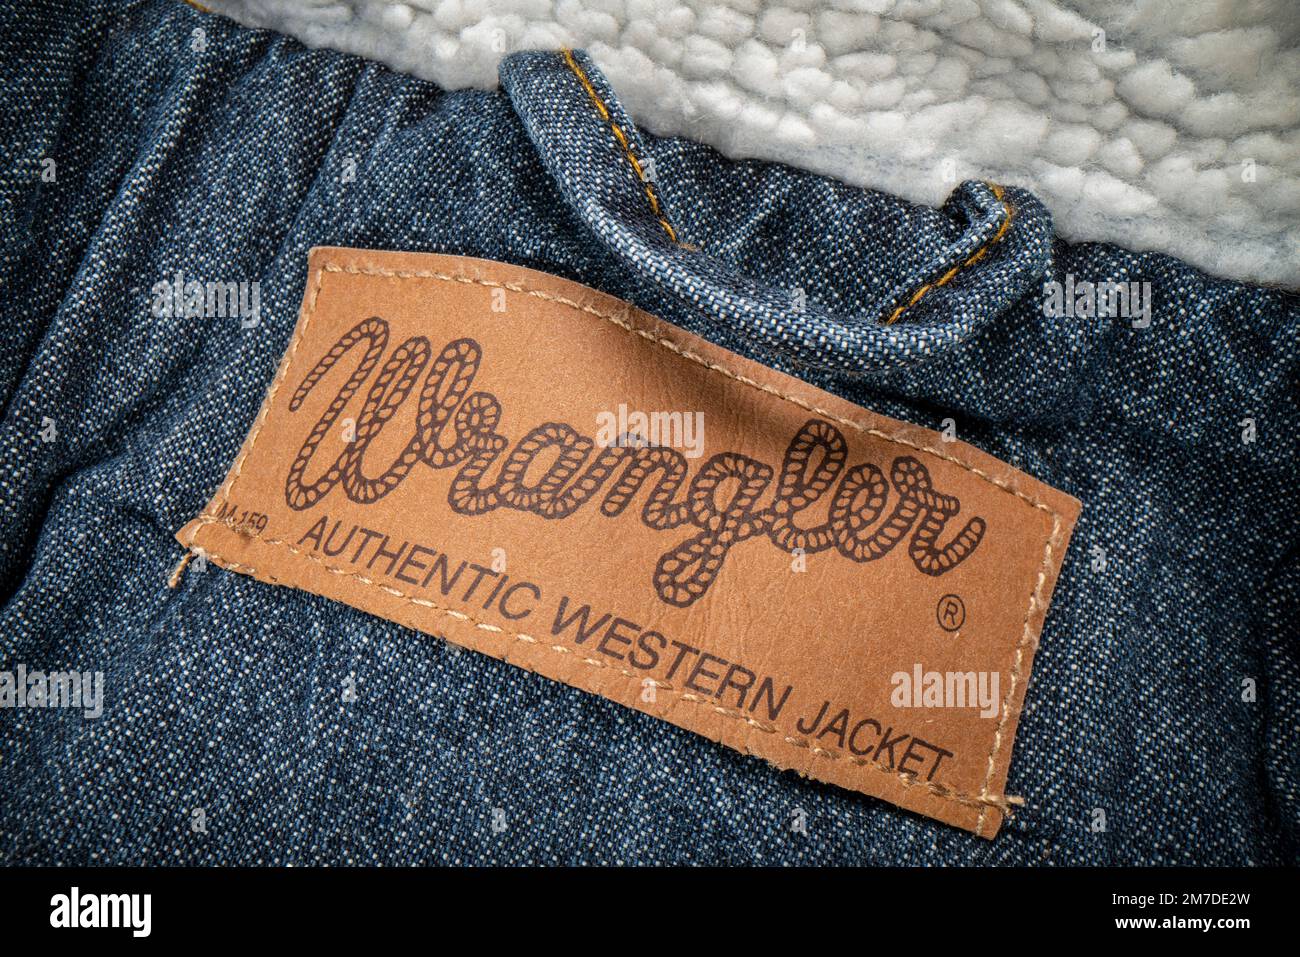 Fort Collins, CO, USA - 14 novembre 2022: Closep di Wrangler etichetta su un camionista jeans giacca. Wrangler è produttore americano di jeans e altri cl Foto Stock